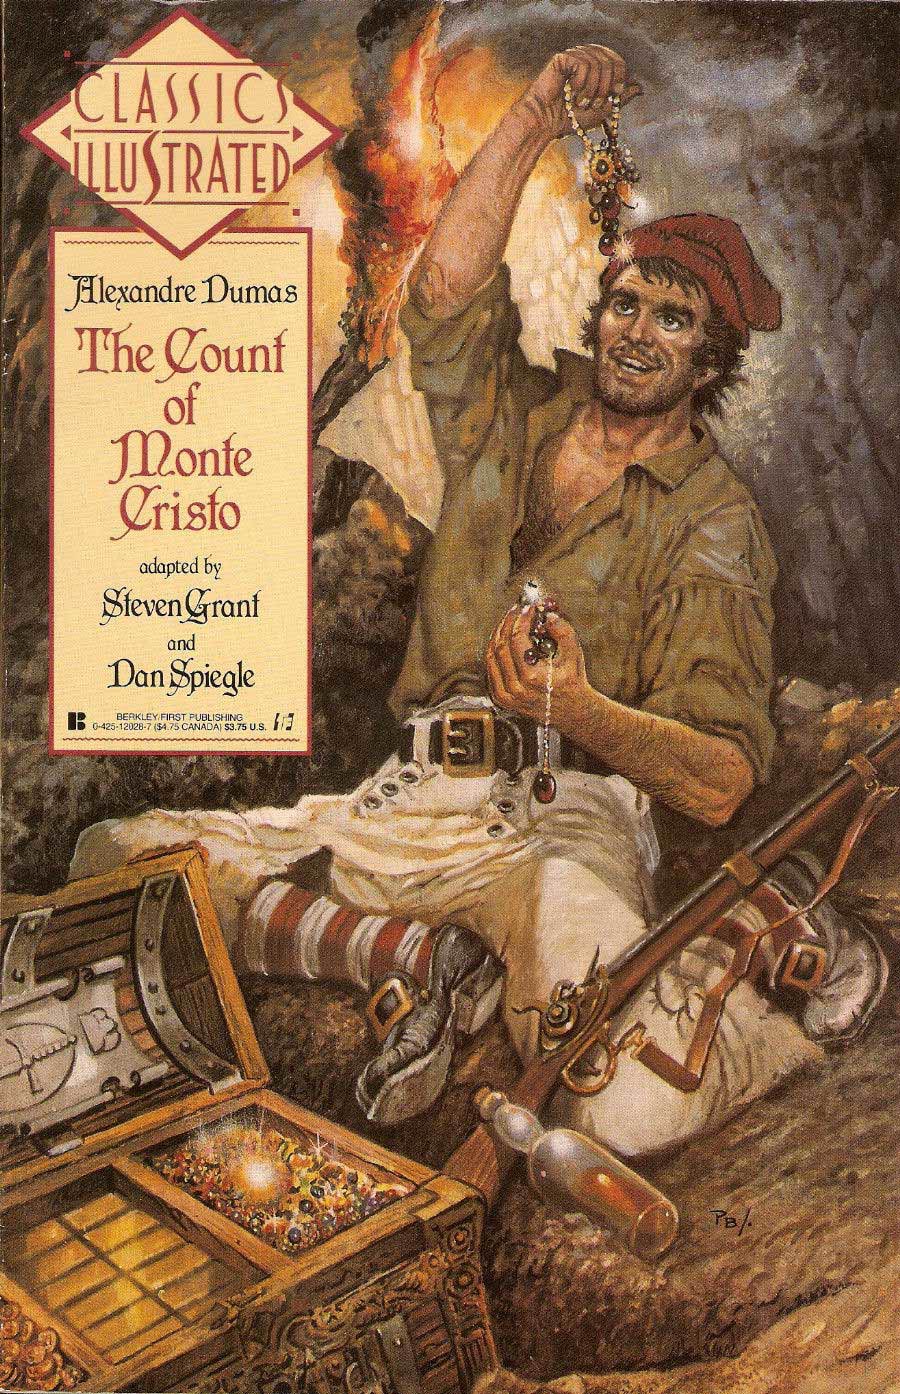 Classics Illustrated Vol 2 #7 The Count Of Monte Cristo